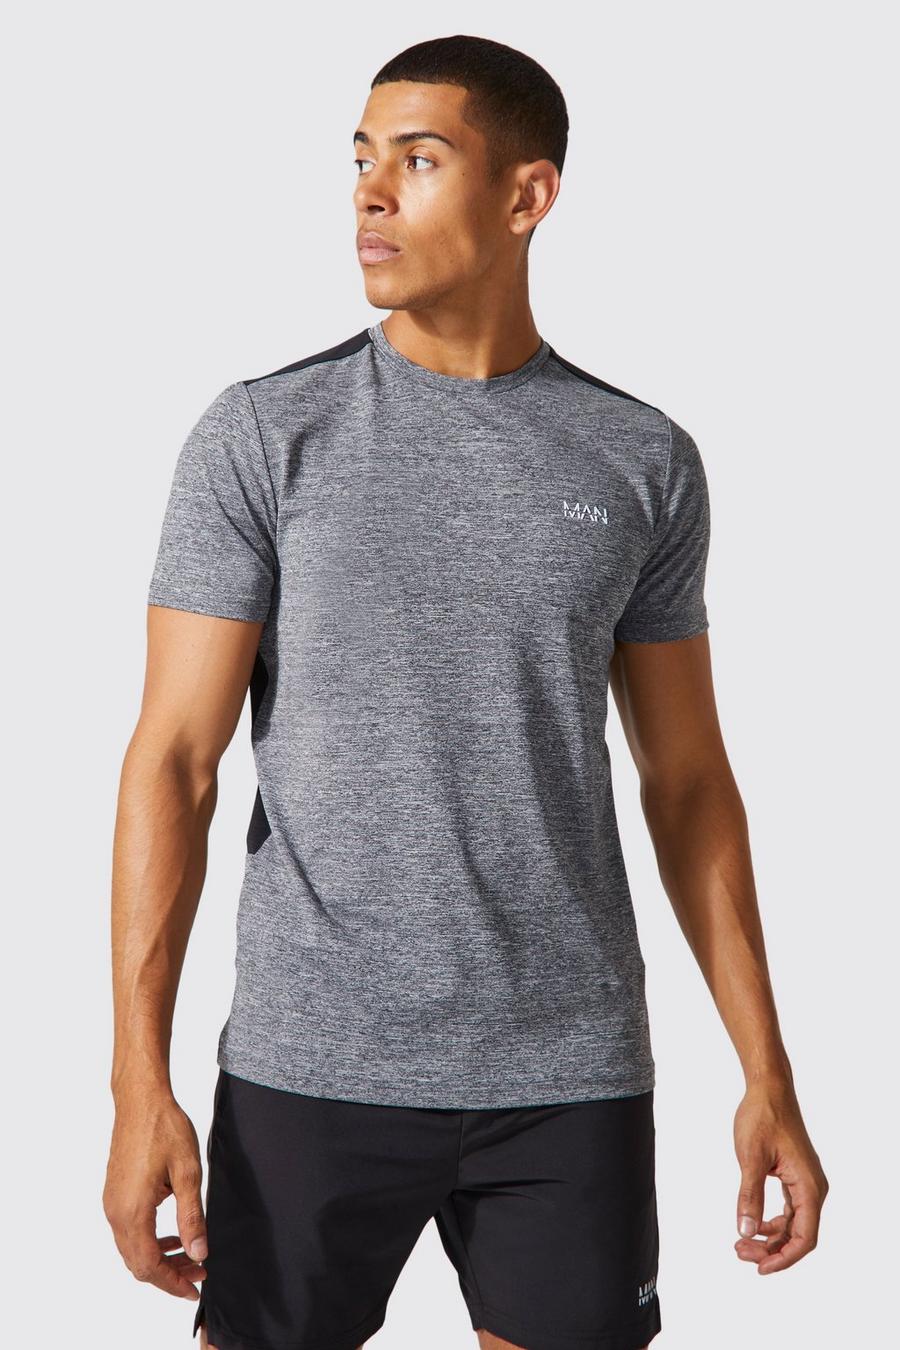 Man Active Performance T-Shirt mit Mesh-Einsatz, Grey marl image number 1